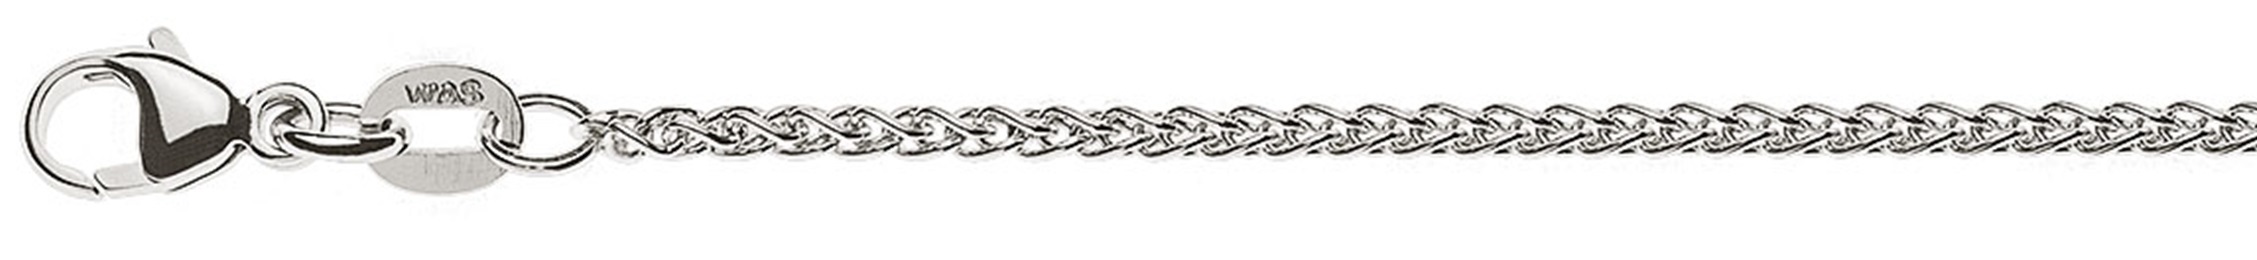 AURONOS Prestige Necklace white gold 18K cable chain 50cm 1.65mm